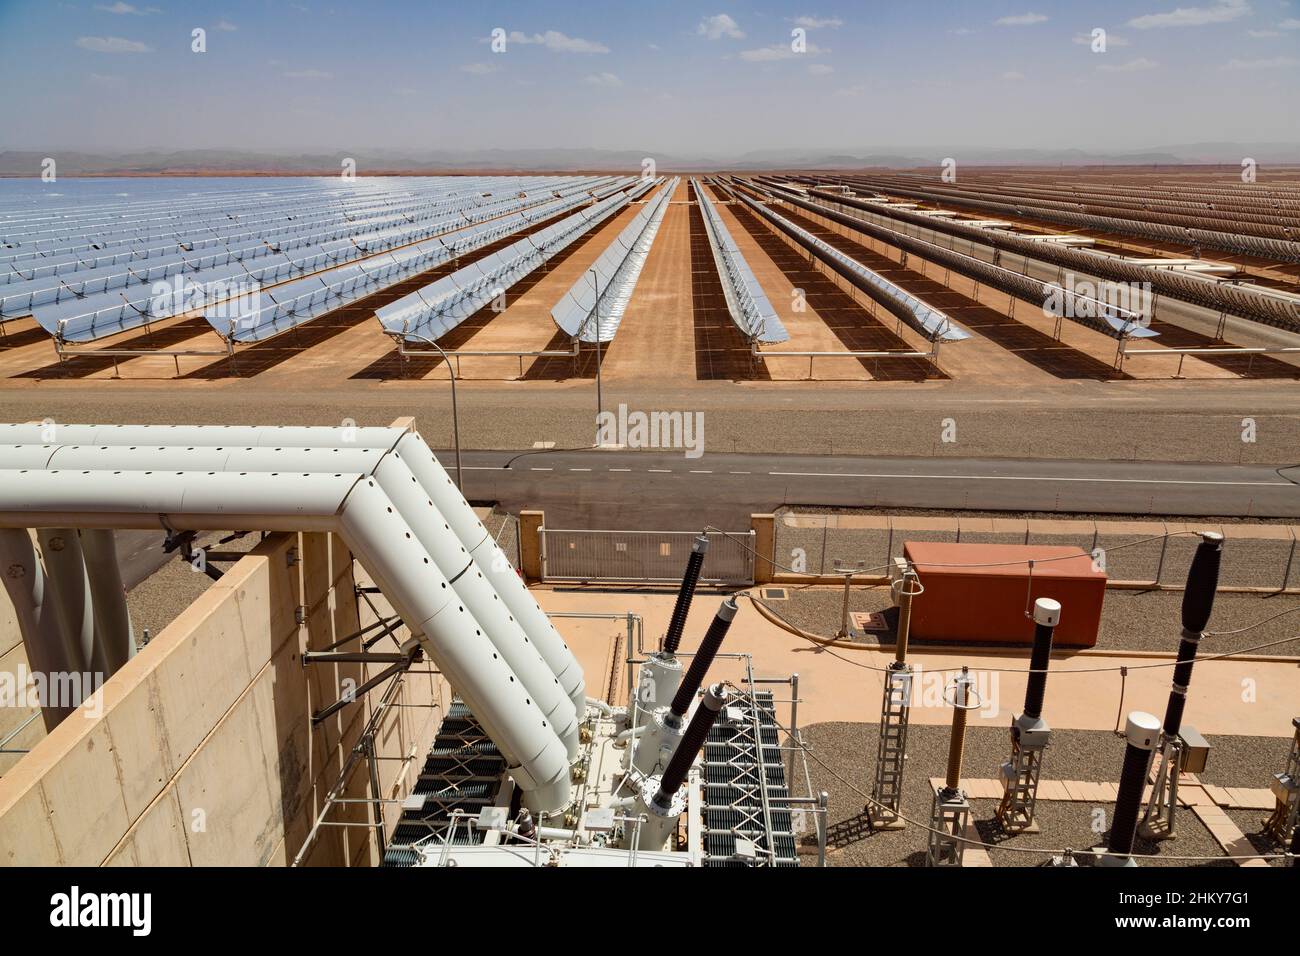 Energía solar térmica La energía sostenible, Noor Ouarzazate concentrado Solar Power Station complejo. Marruecos, Magreb, África del Norte Foto de stock